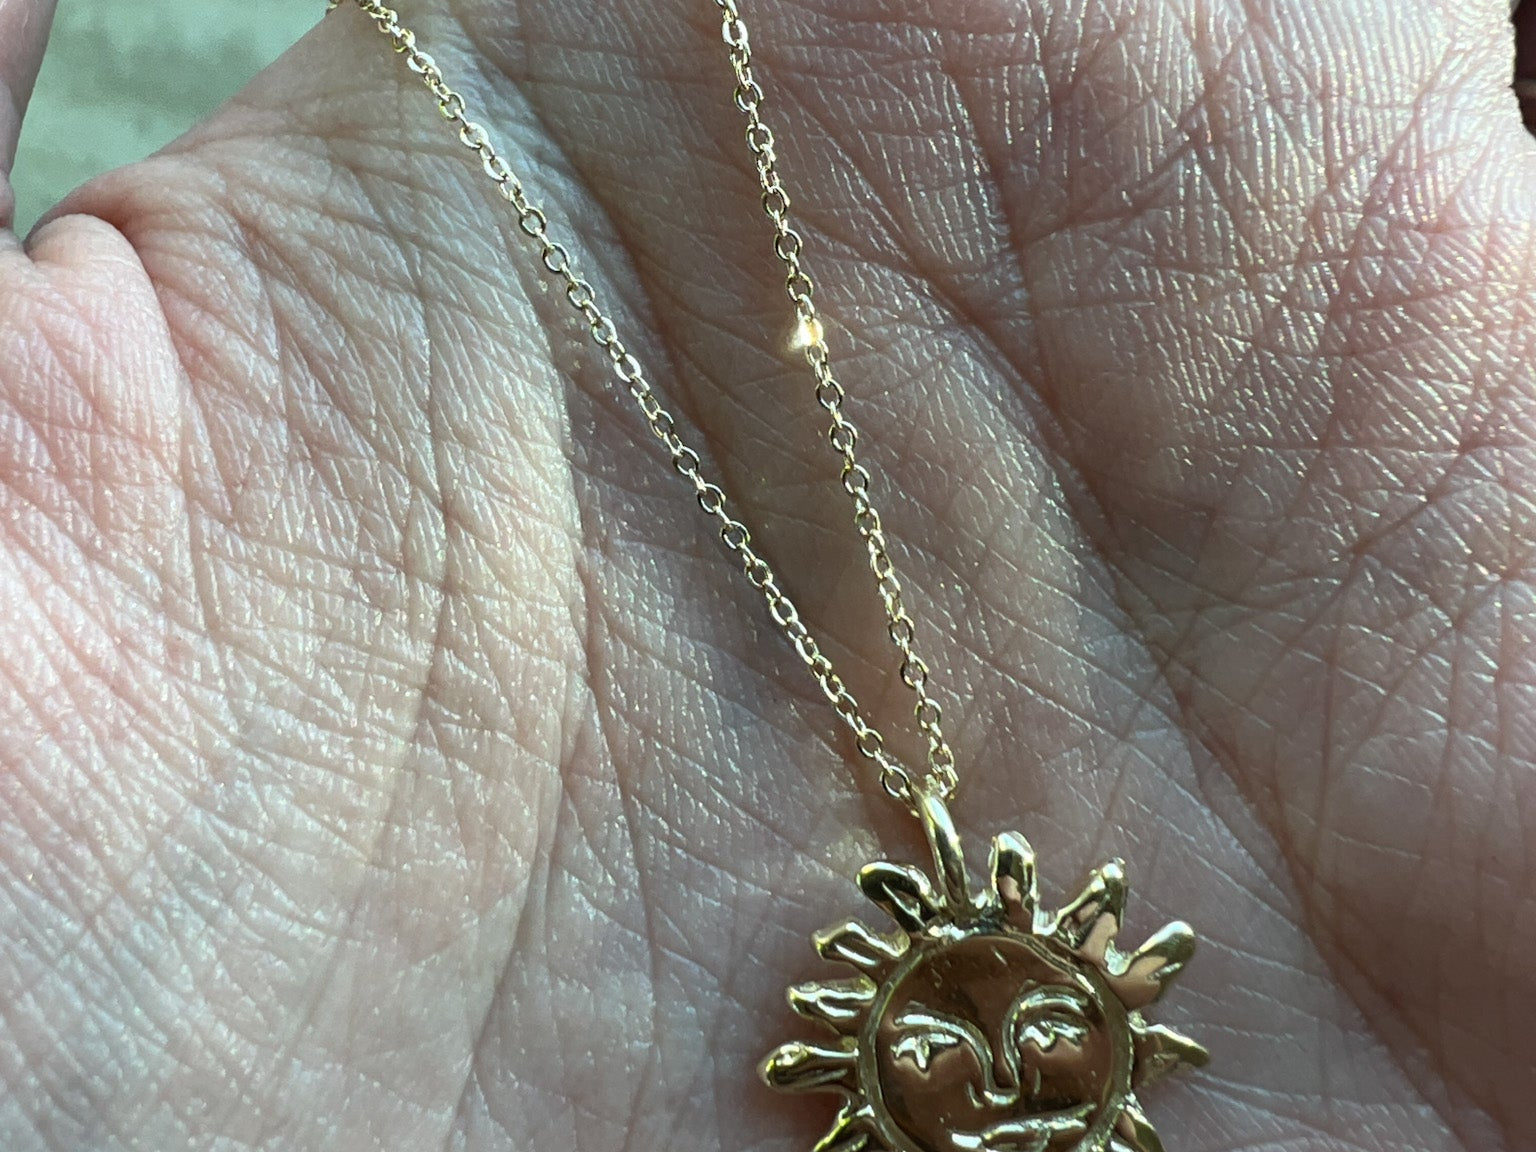 Gold Sun Talisman Necklace - Gold Sun Necklace - Dea Dia